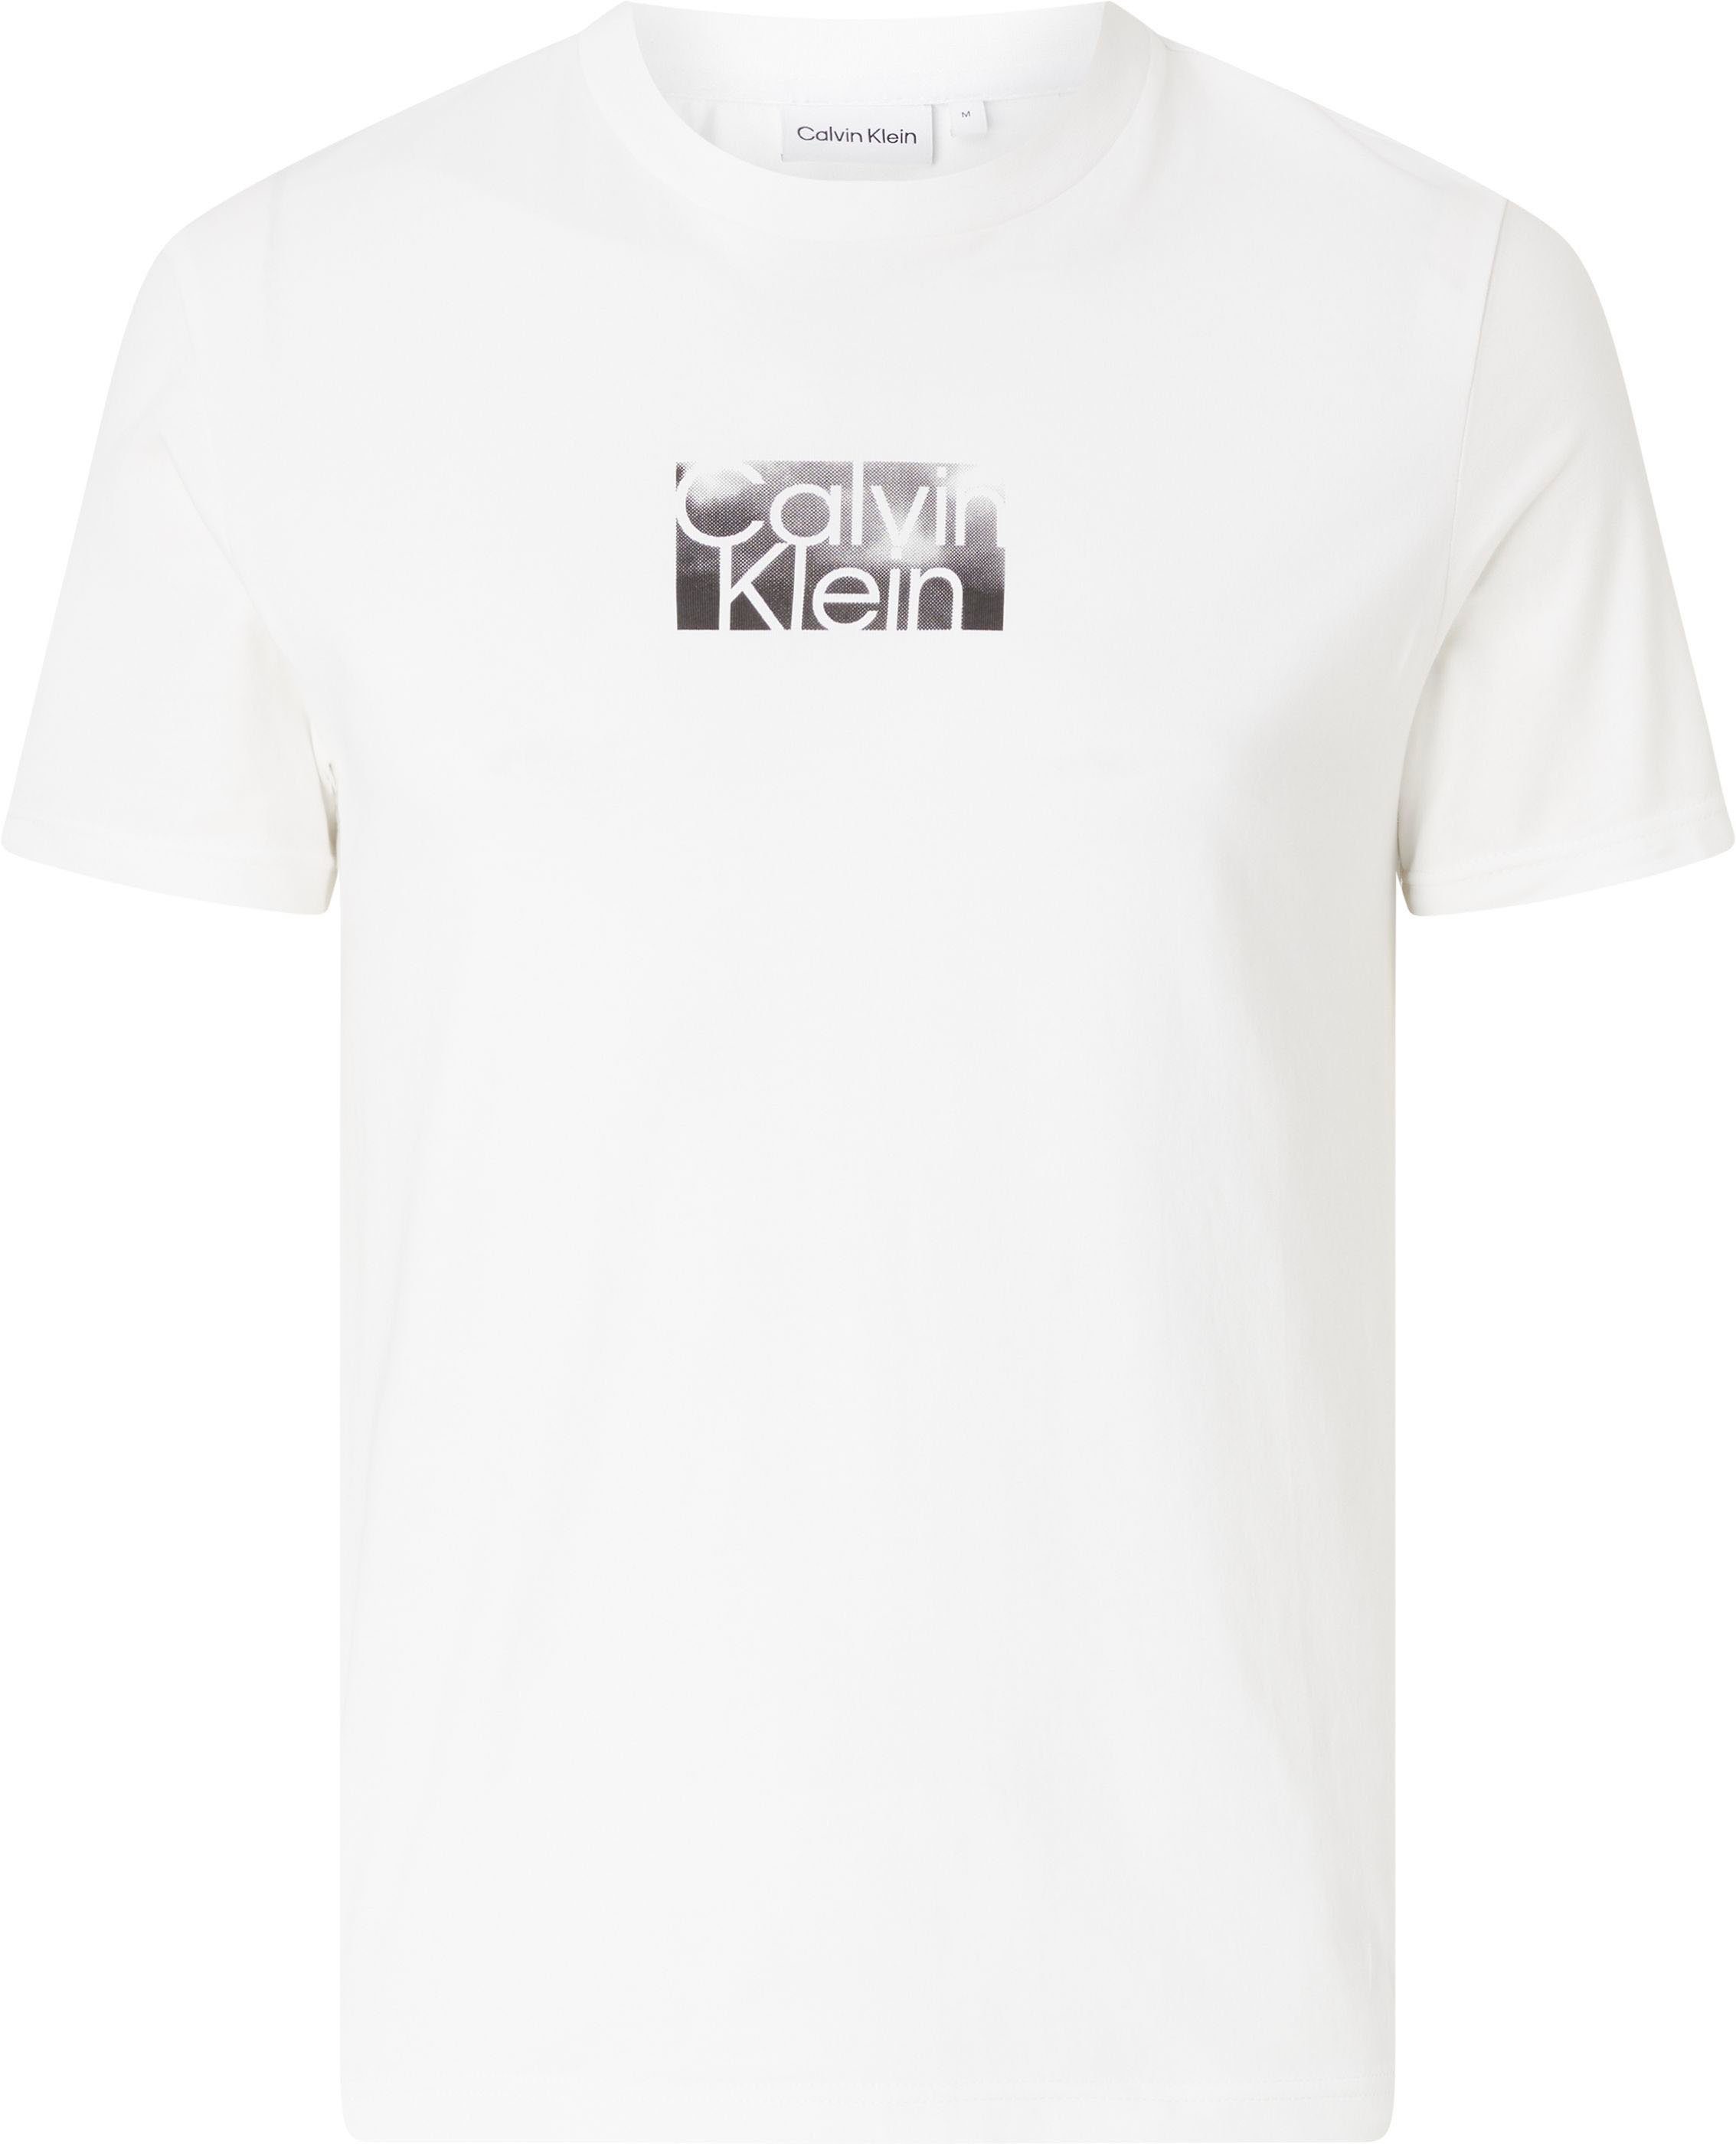 Calvin Klein Logoschriftzug mit Big&Tall weiß T-Shirt